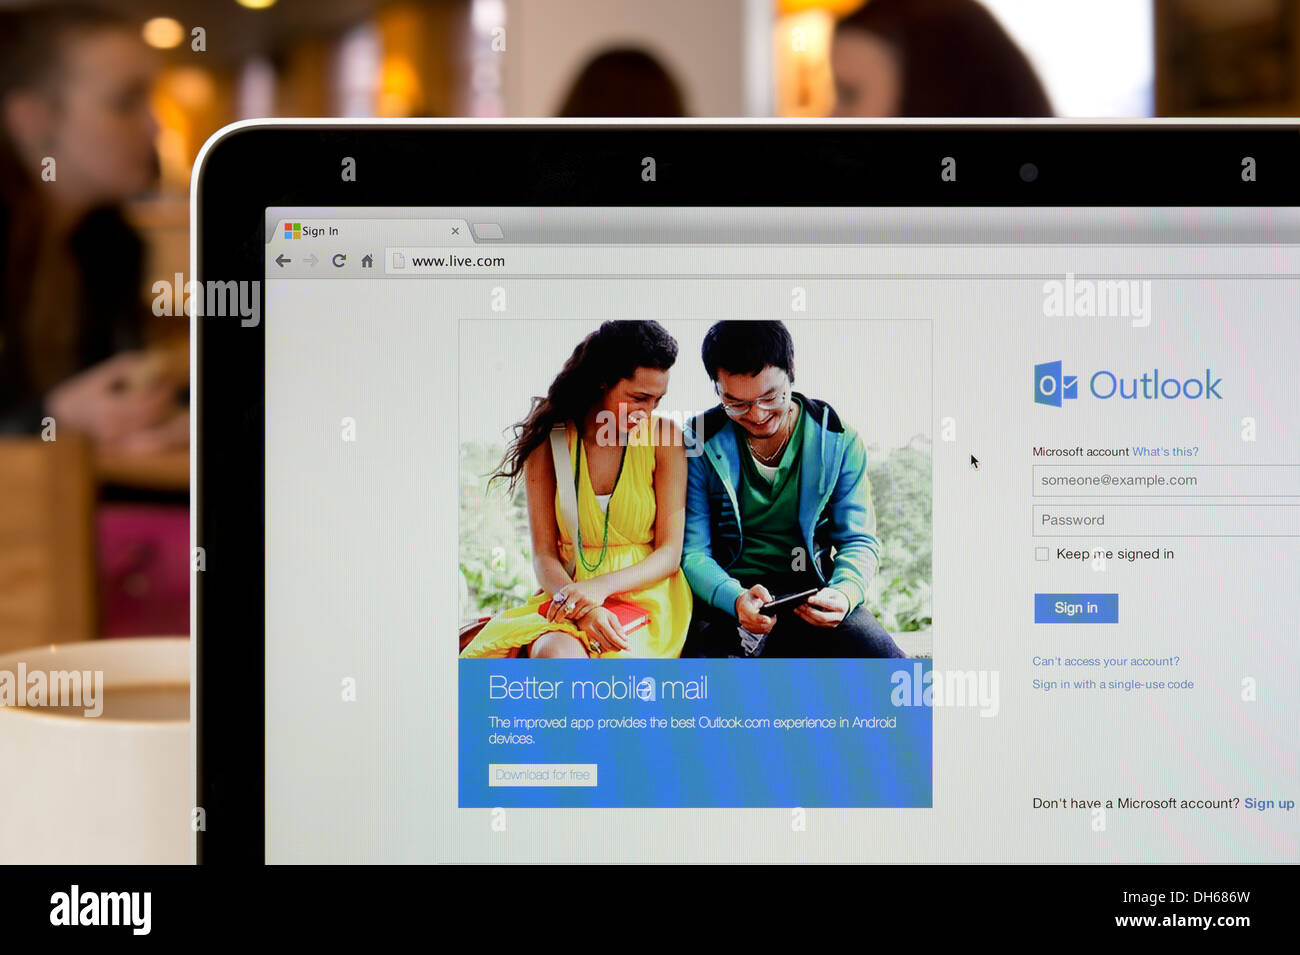 El sitio web de Windows Live shot en un ambiente de cafetería (sólo para uso editorial: -print, televisión, e-book editorial y sitio web). Foto de stock